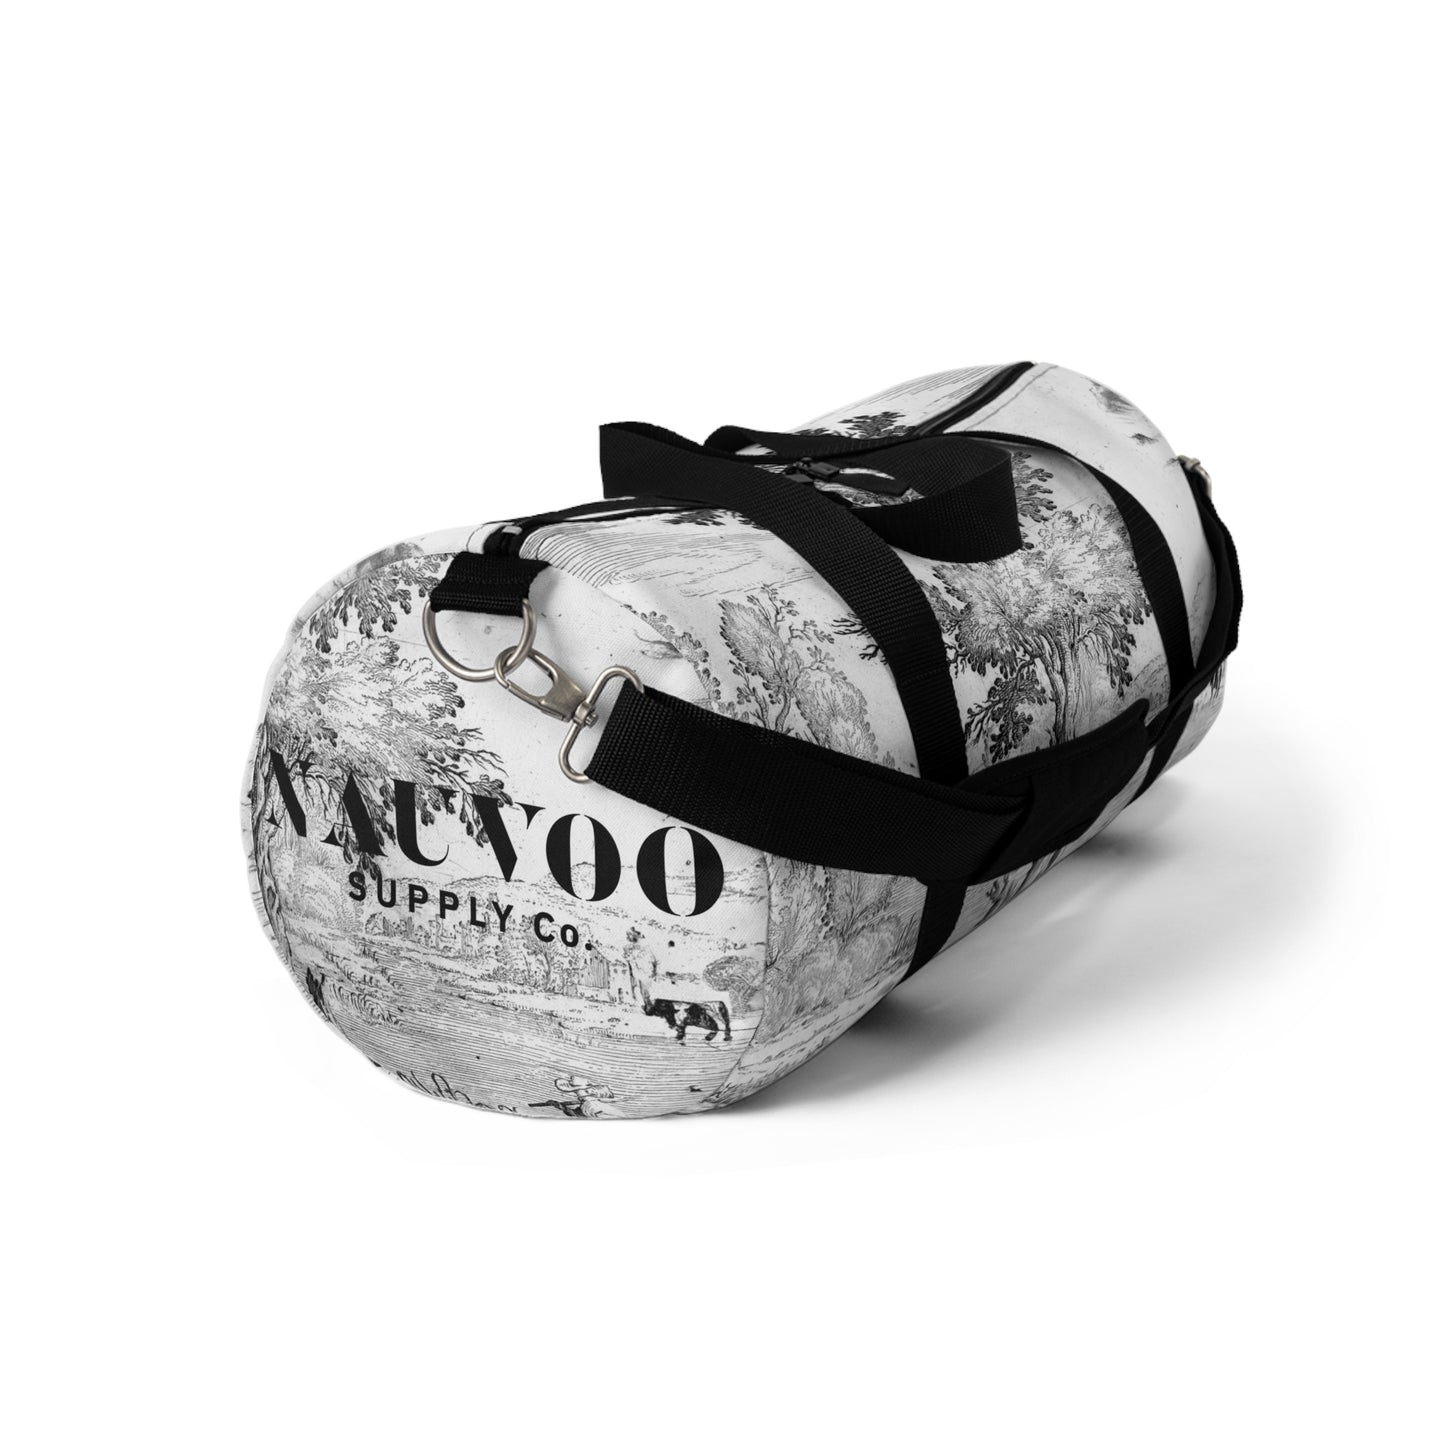 Nauvoo Supply Winter White Duffel Bag